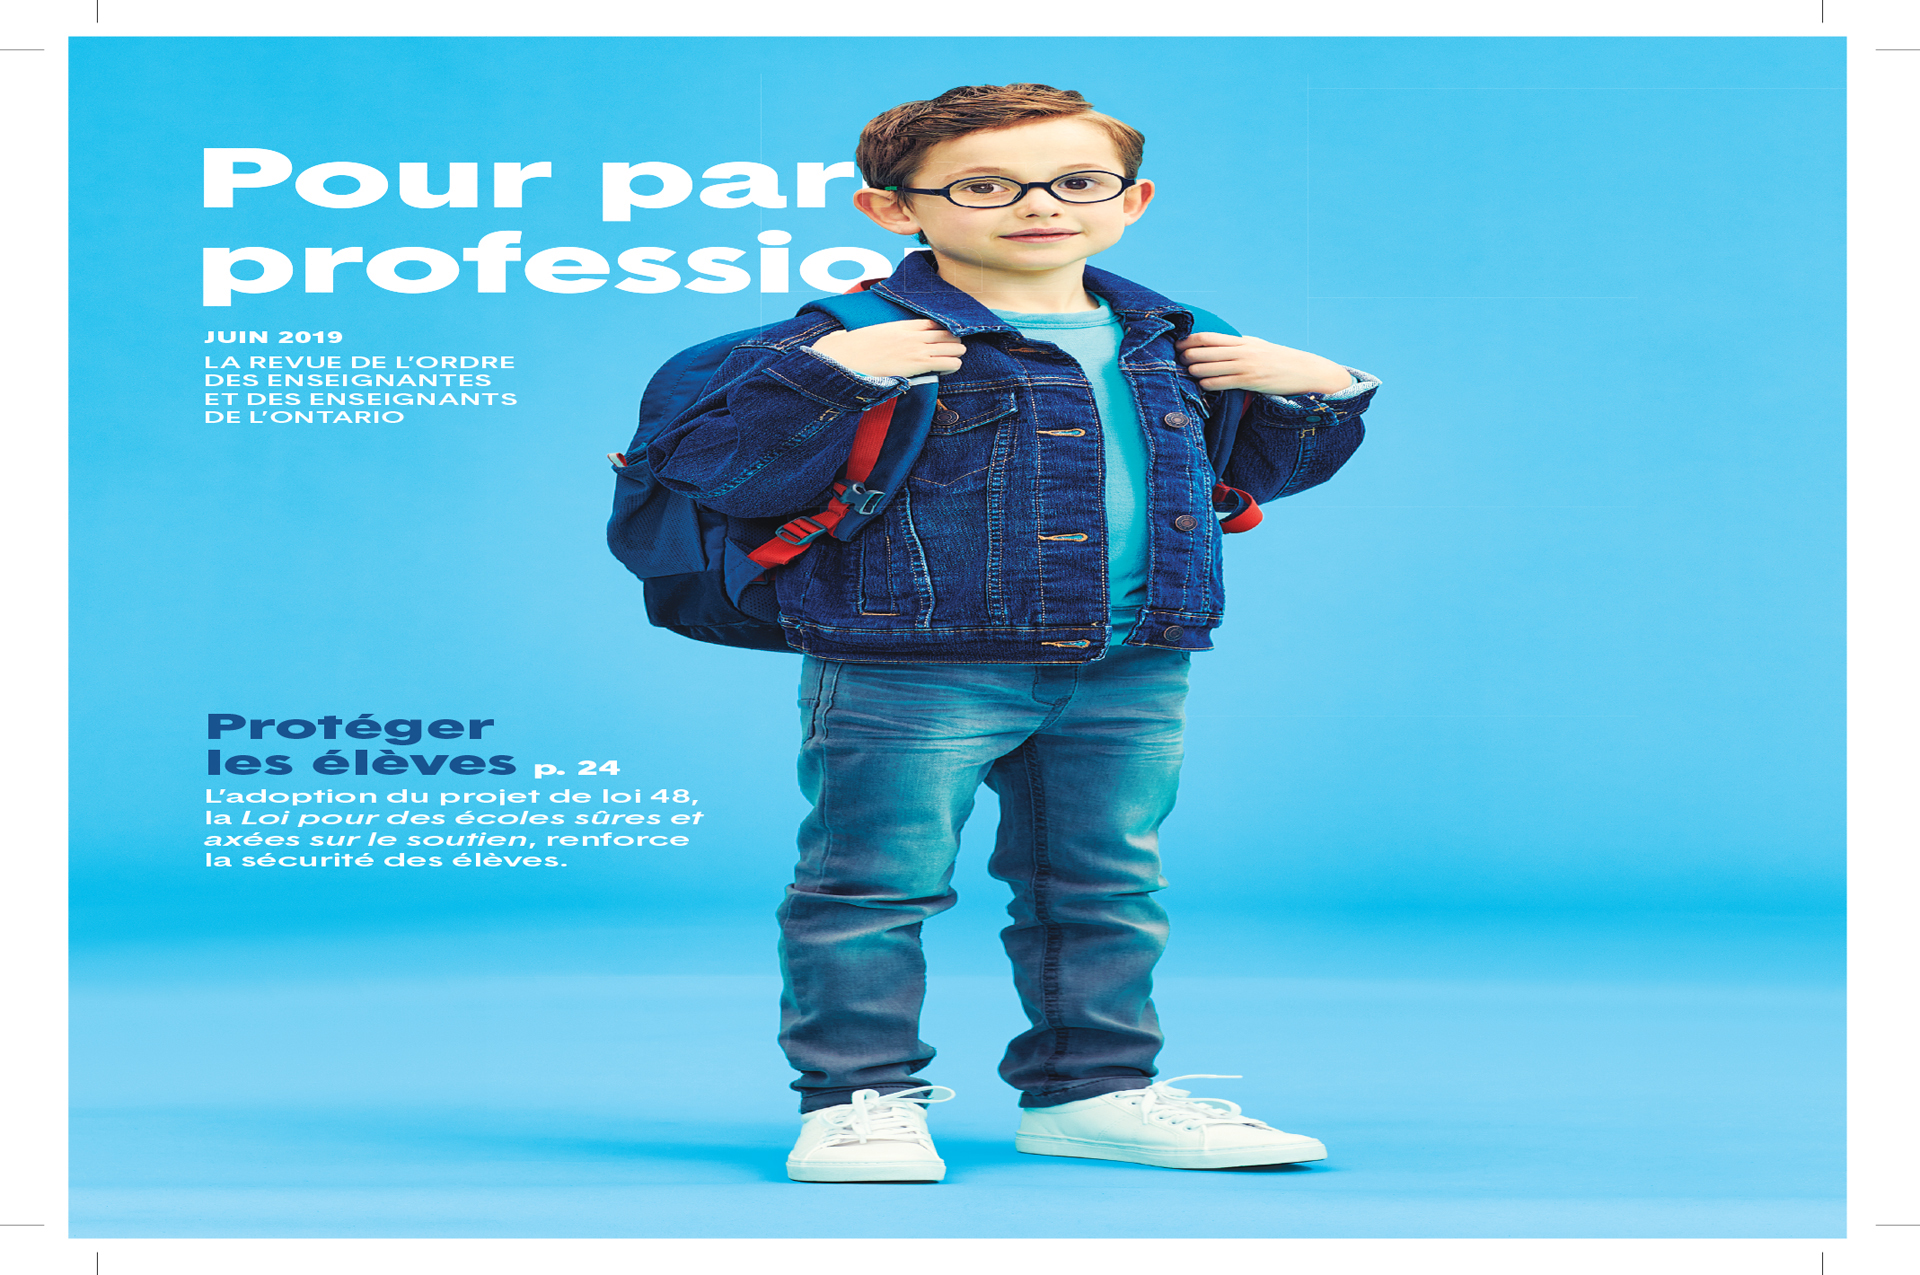 Photo de la couverture du numéro de juin 2019 de Pour parler profession sur laquelle figure un enfant portant des lunettes et un sac à dos. L’enfant est debout et tient les courroies du sac à dos.